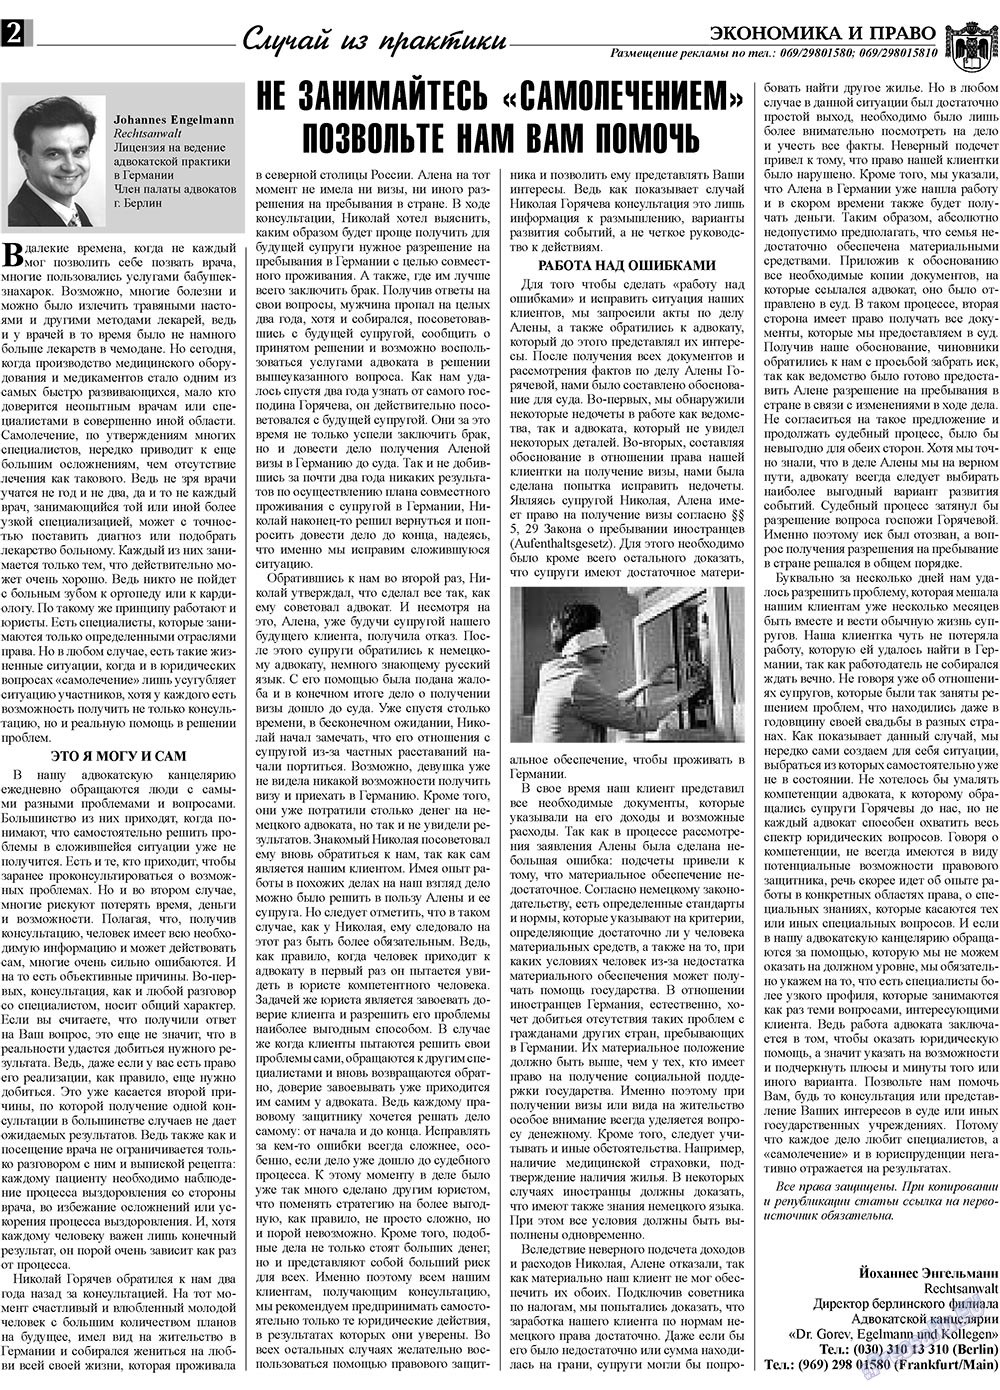 Экономика и право, газета. 2010 №1 стр.2